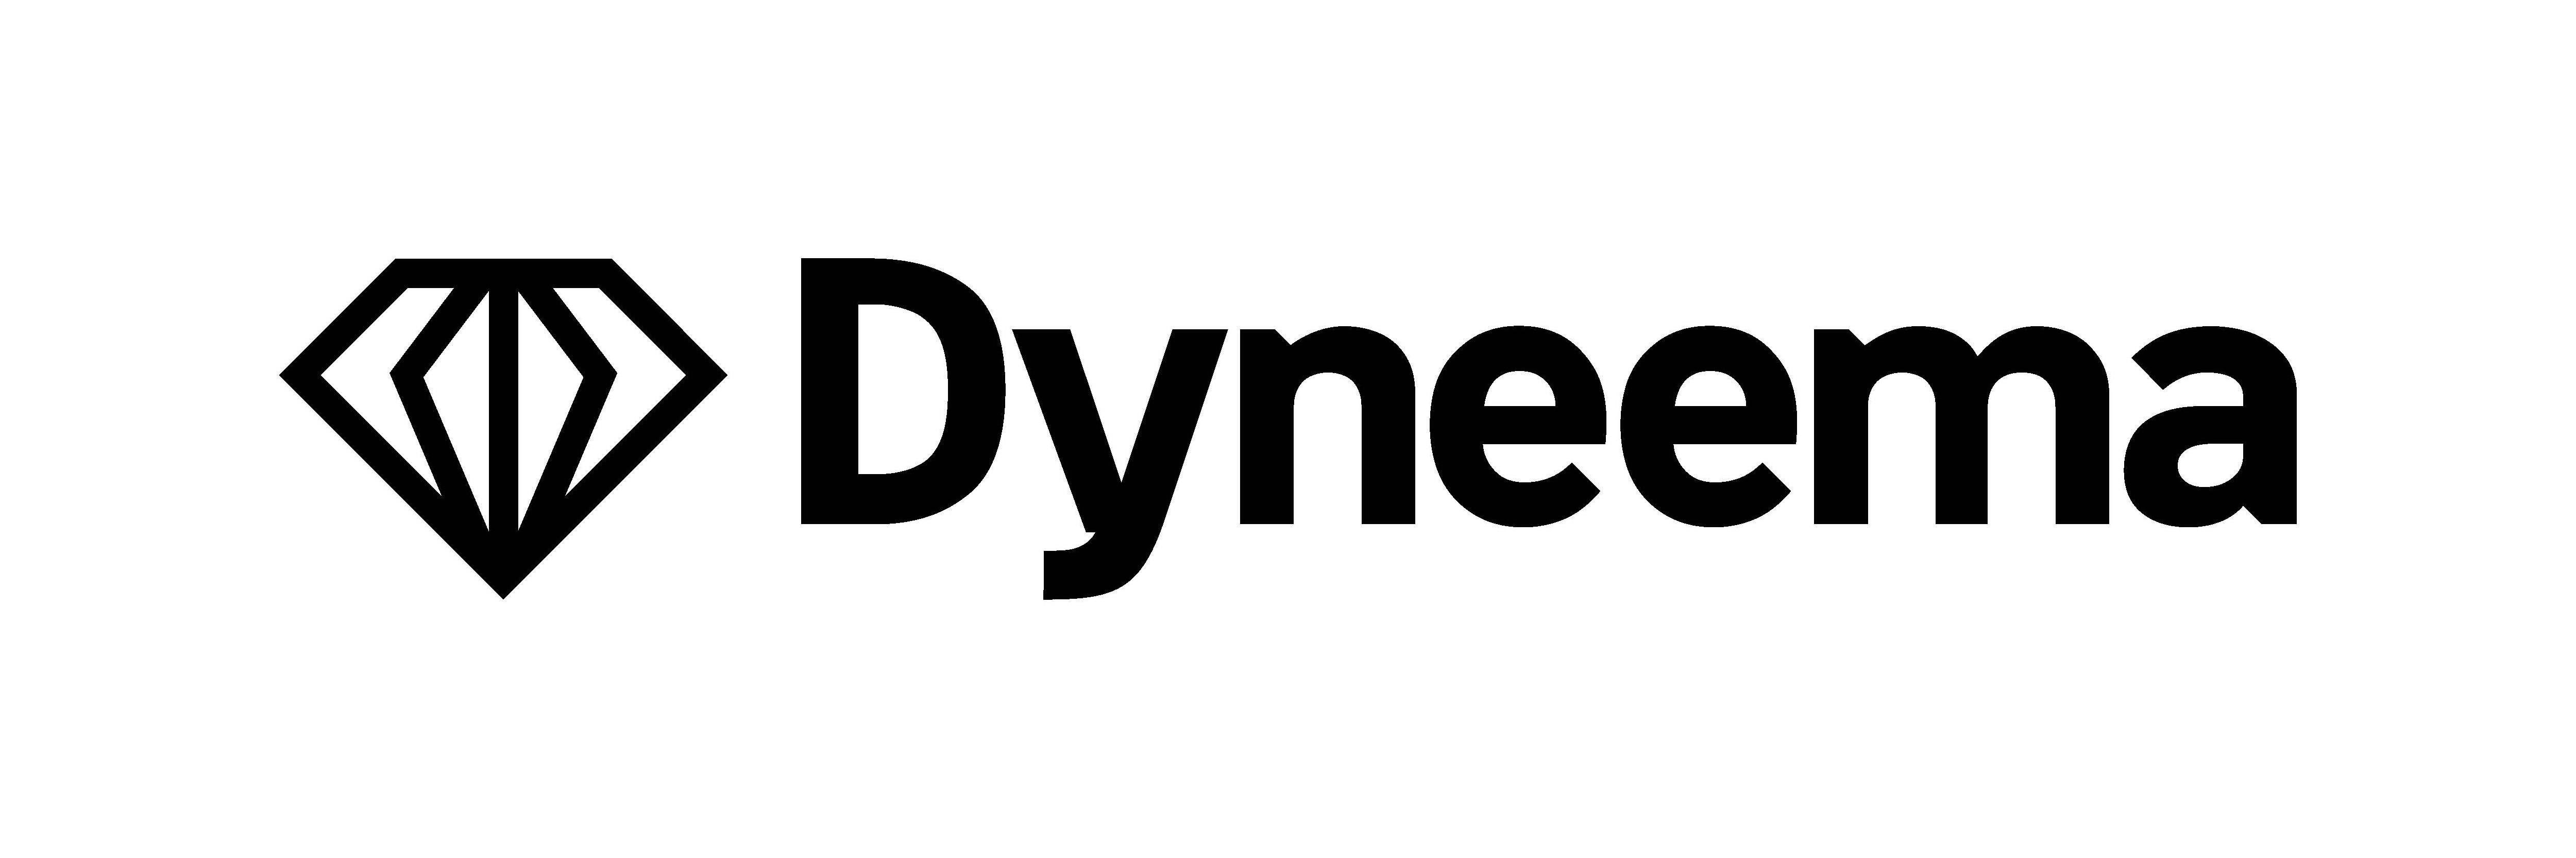 DYNEEMA - Avient Protective Materials B.V. Trademark Registration